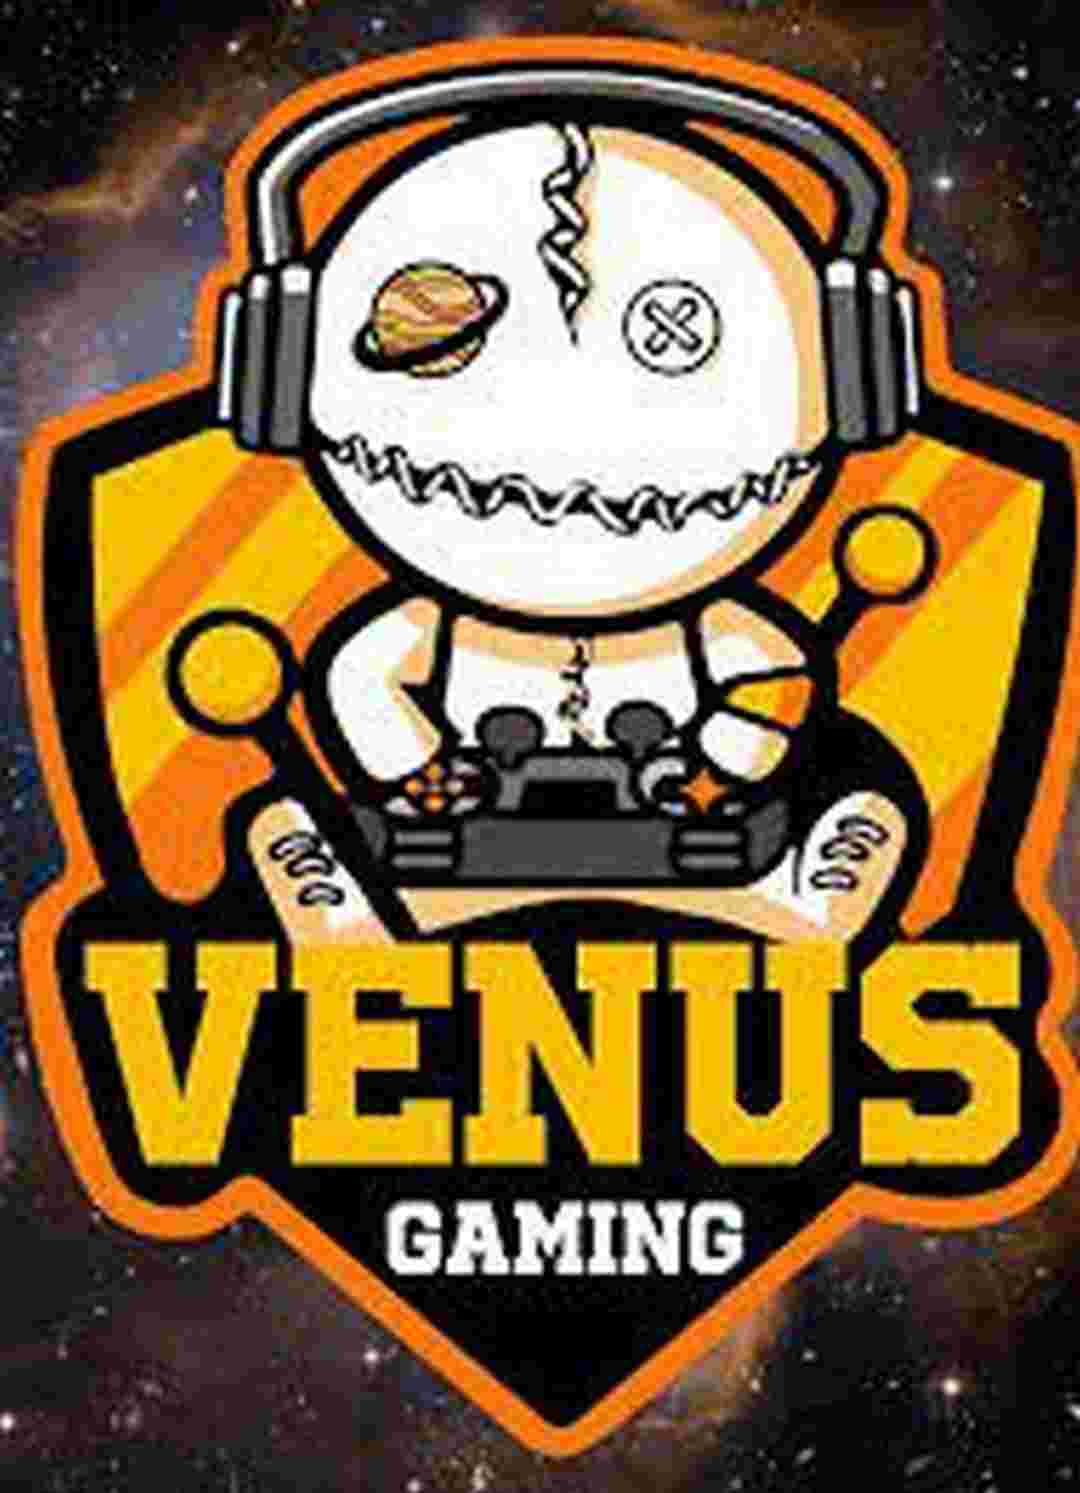 Một vài thông tin đặc sắc xoay quanh Venus Gaming